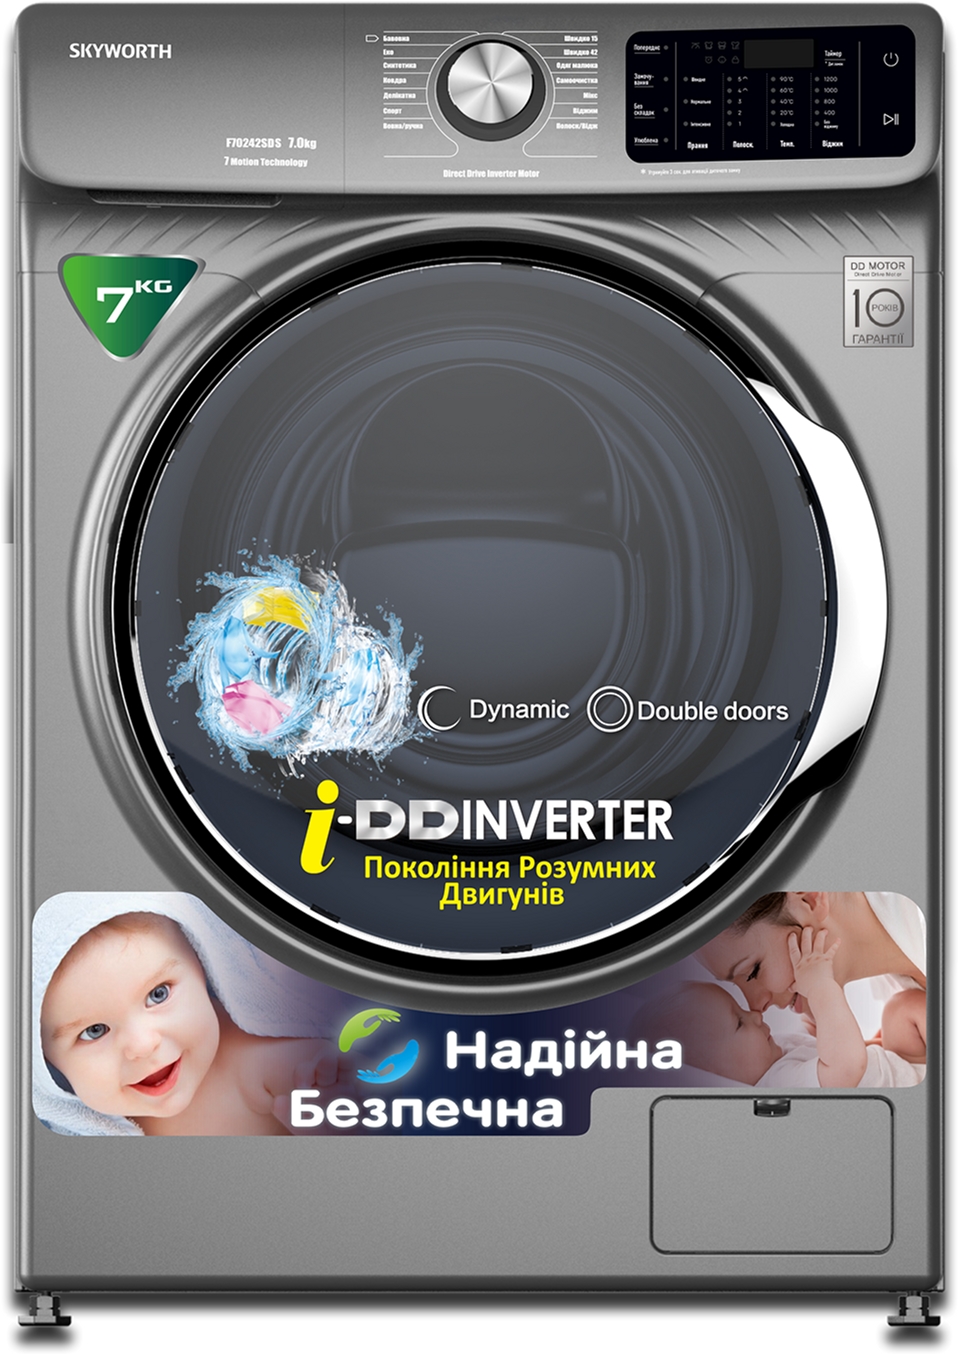 Отзывы стиральная машина Skyworth F70242SDS в Украине